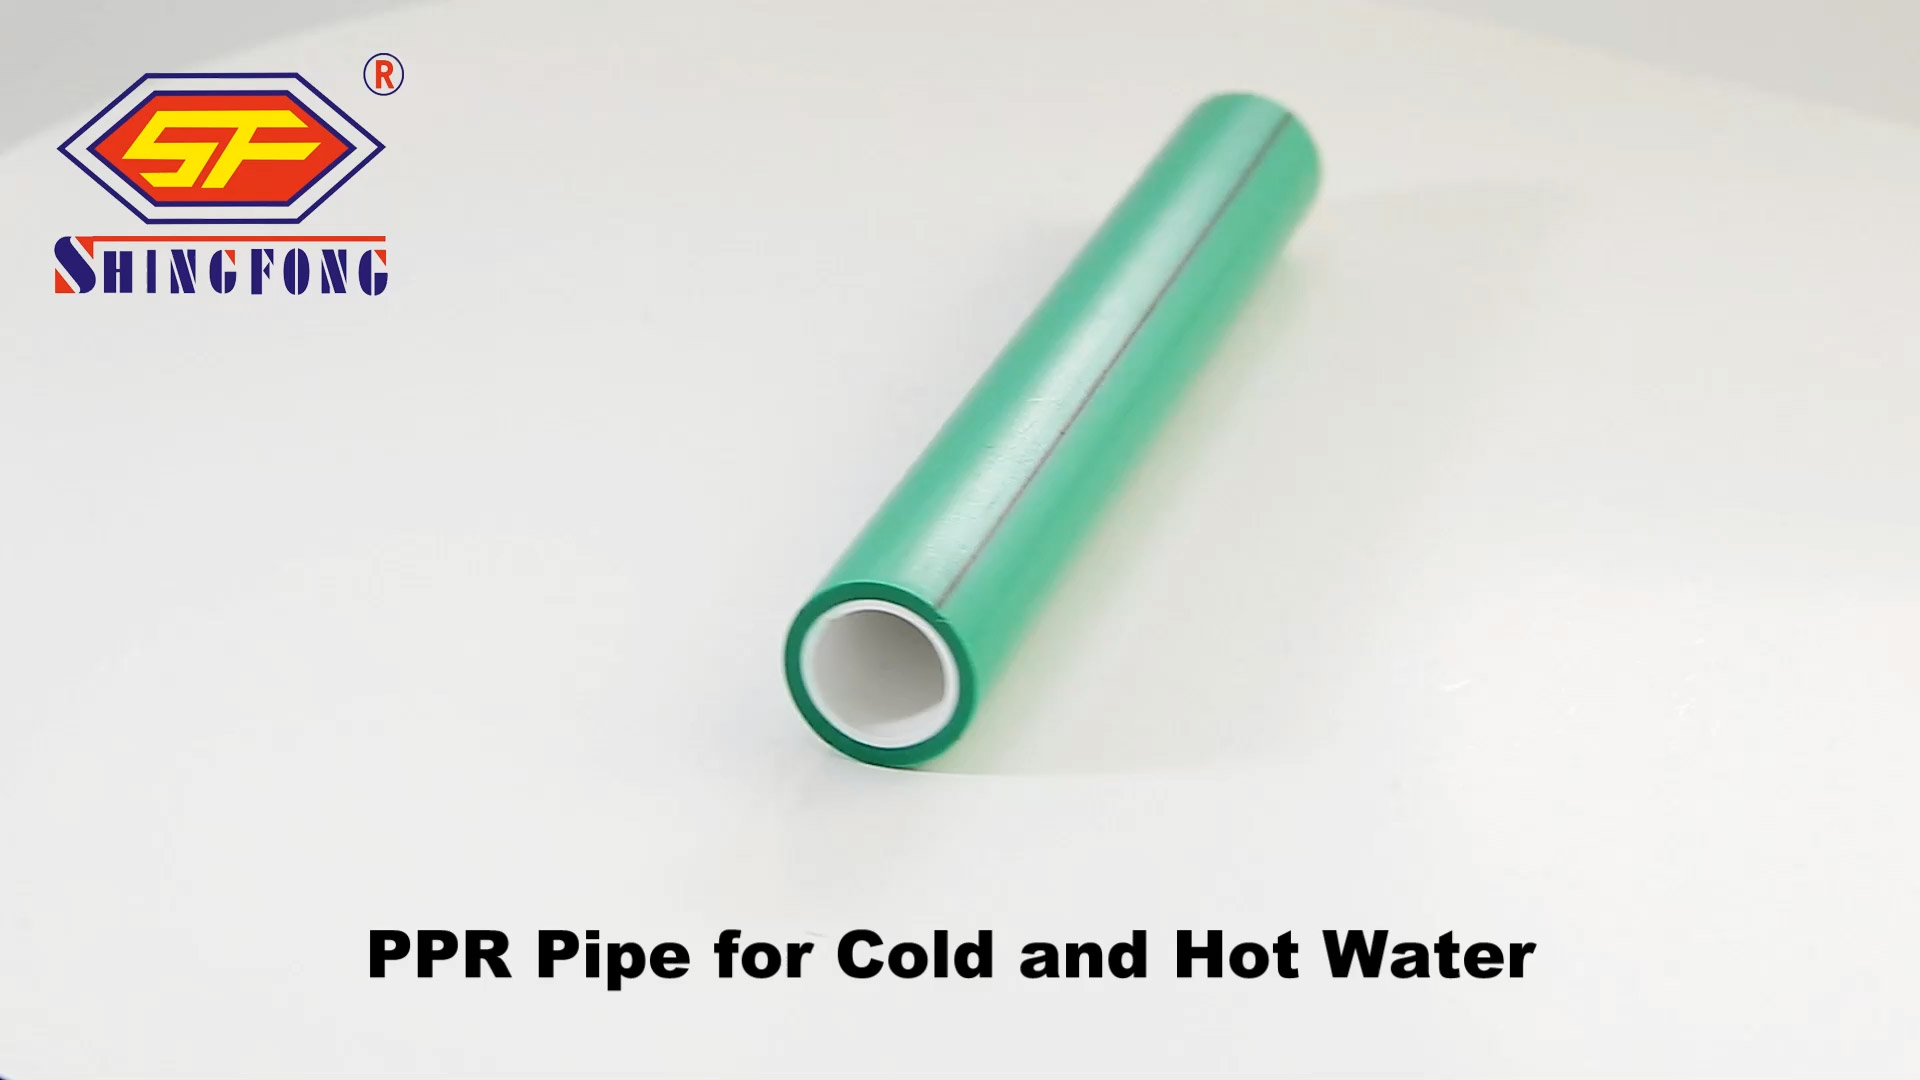 Millor canonada PPR per a aigua freda i calenta Preu de fàbrica | Shingfong